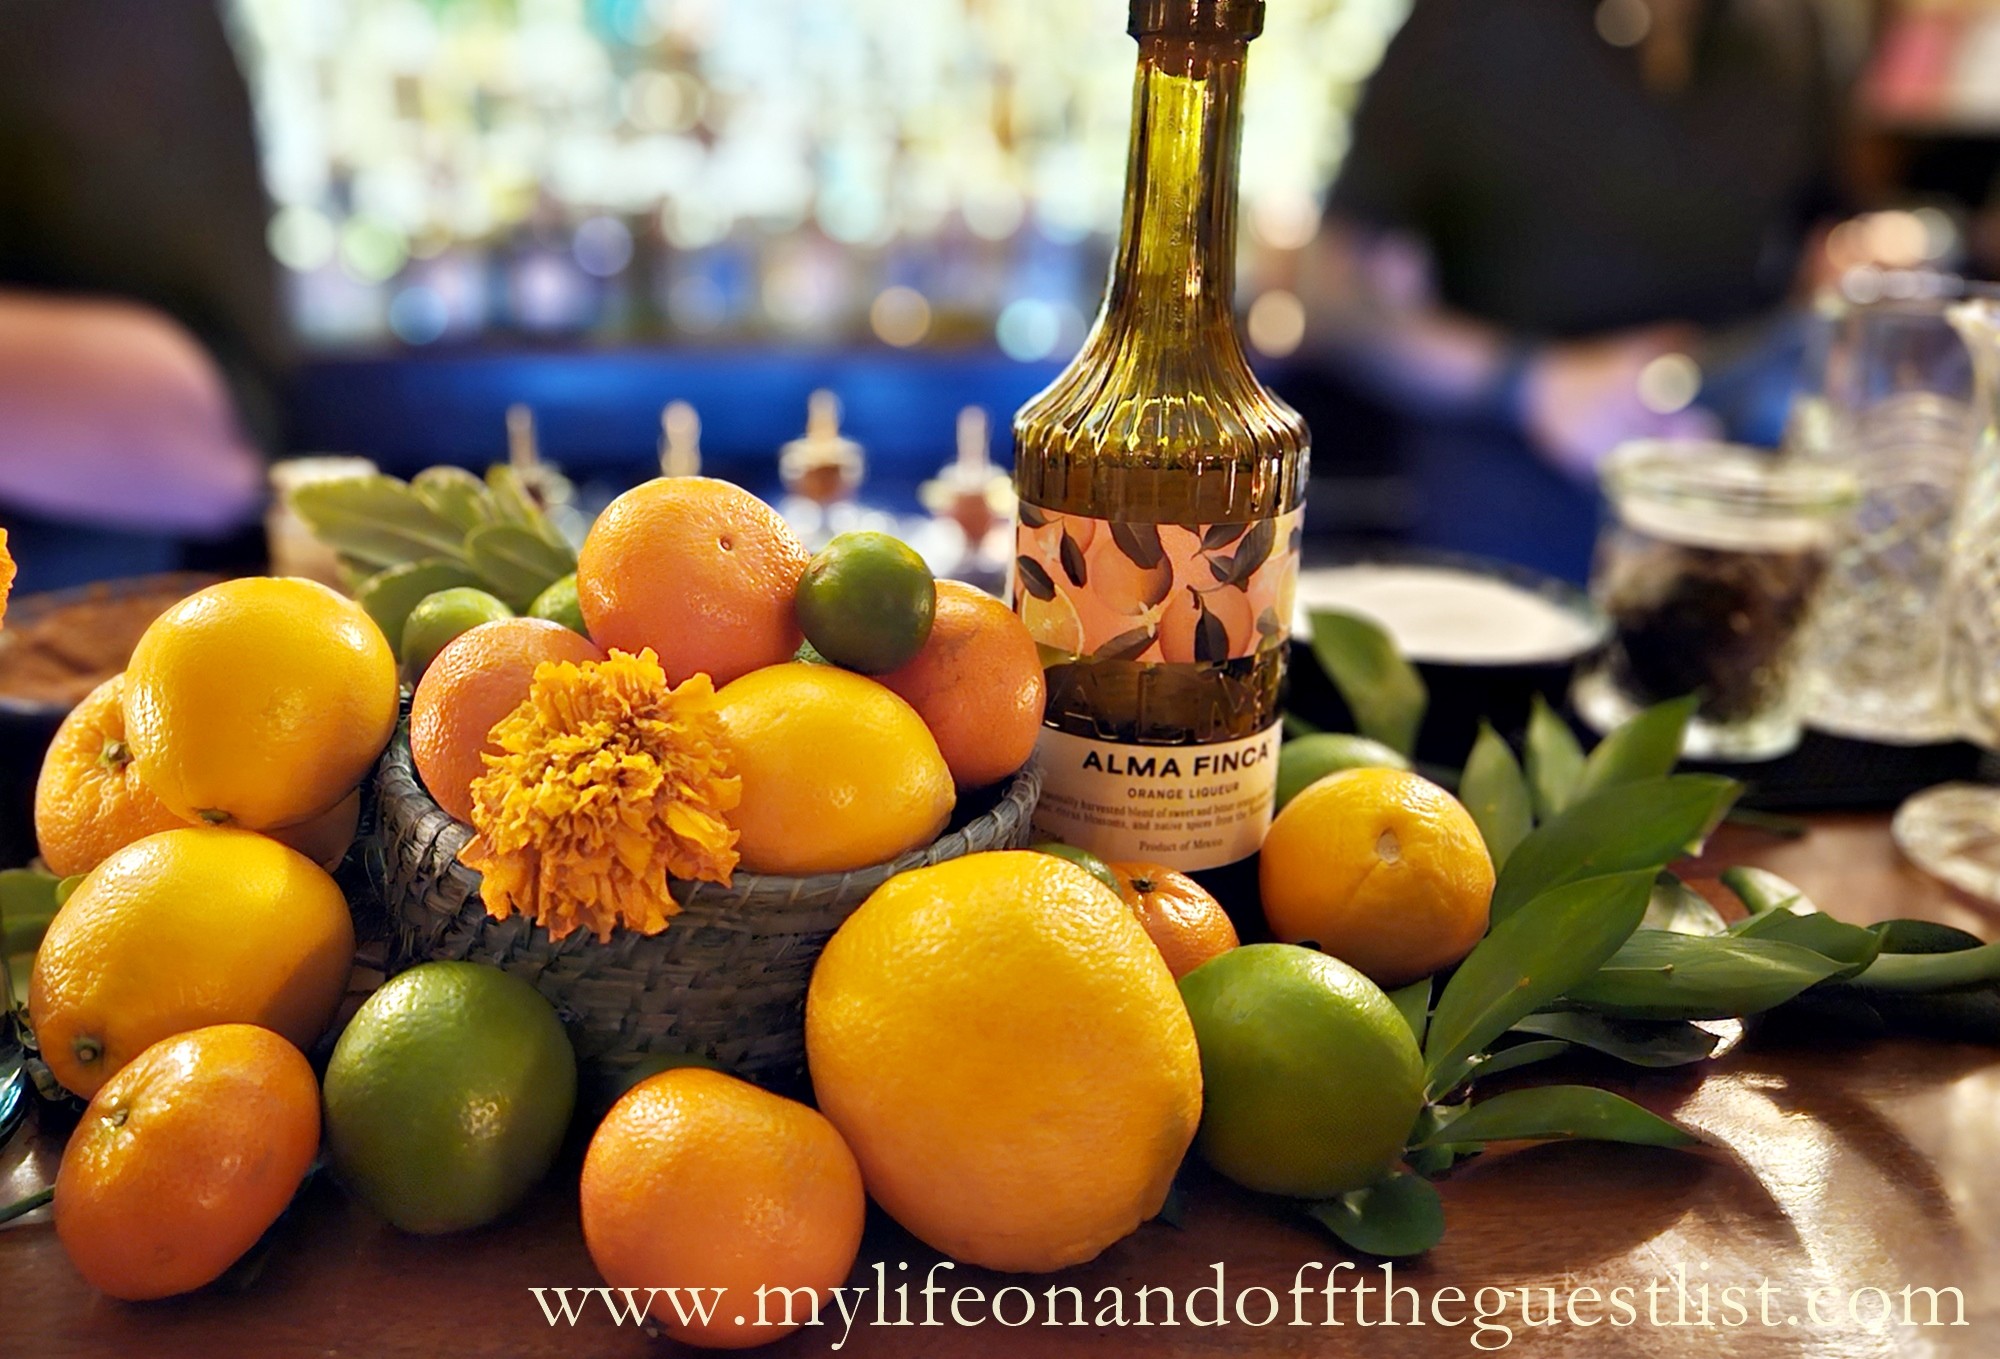 Alma Finca Orange Liqueur - Celebrate the Essence of Yucatan